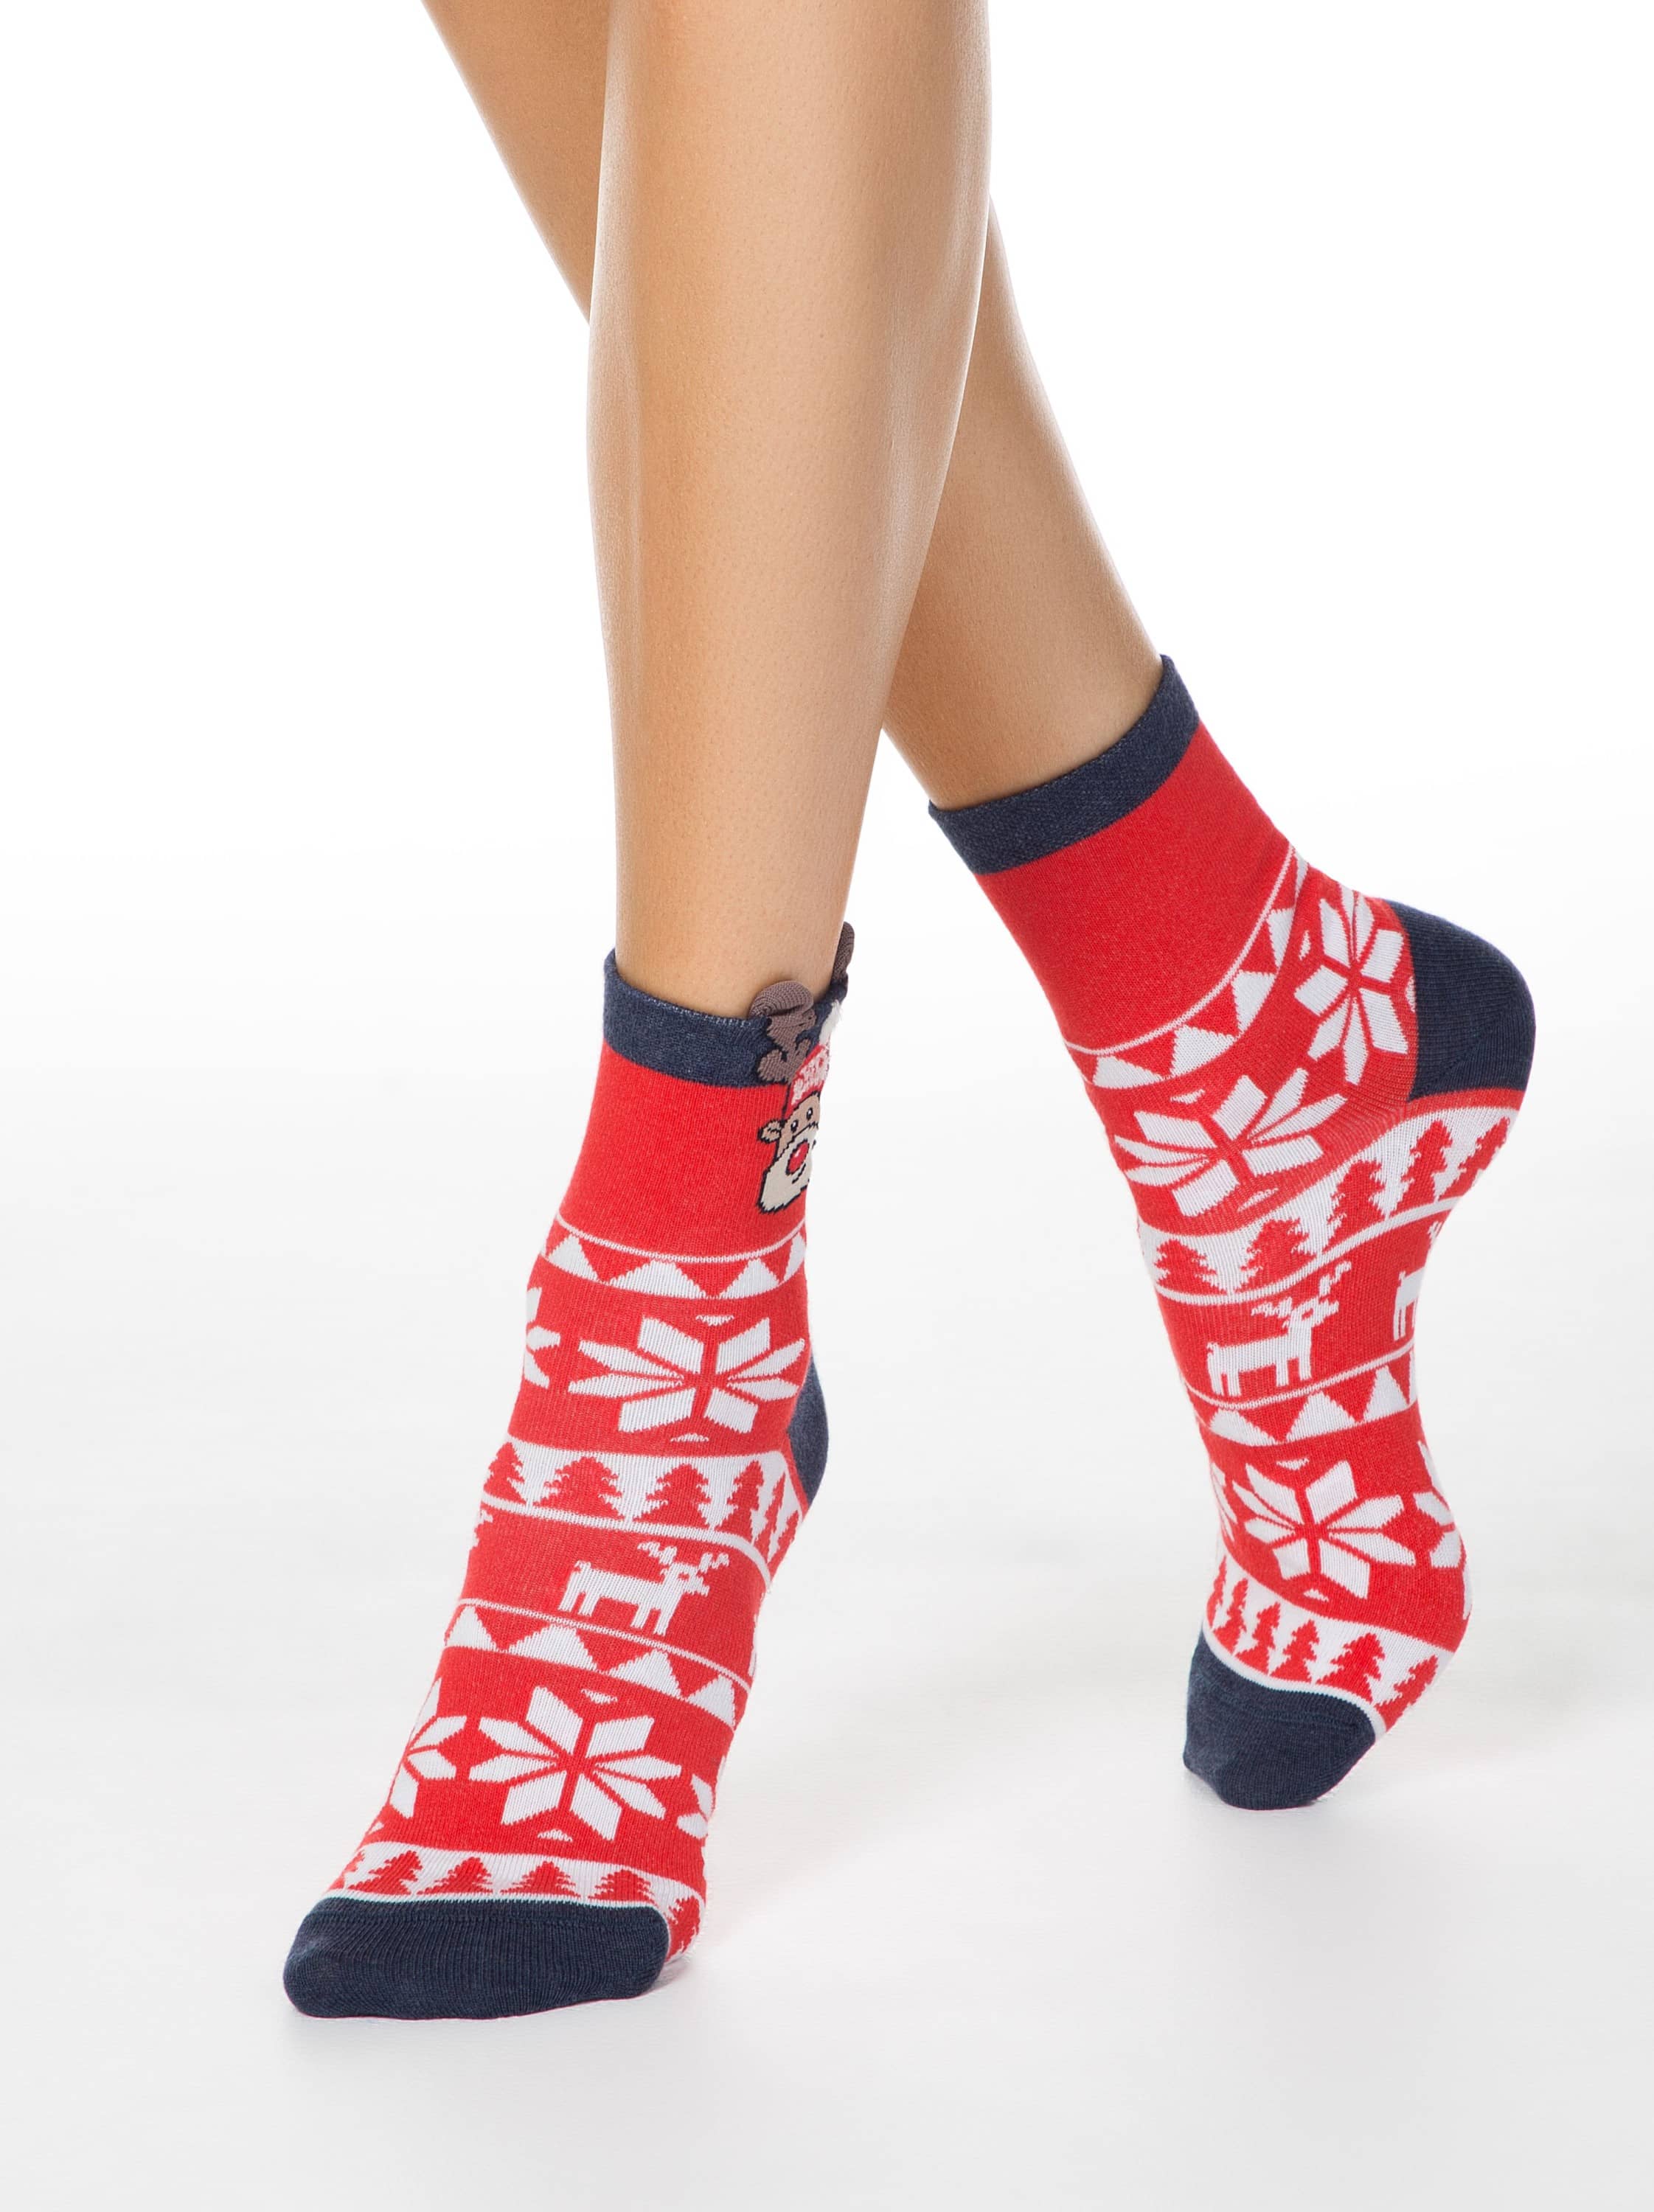 Božične nogavice ženske rdeče z vzorcem jelenček